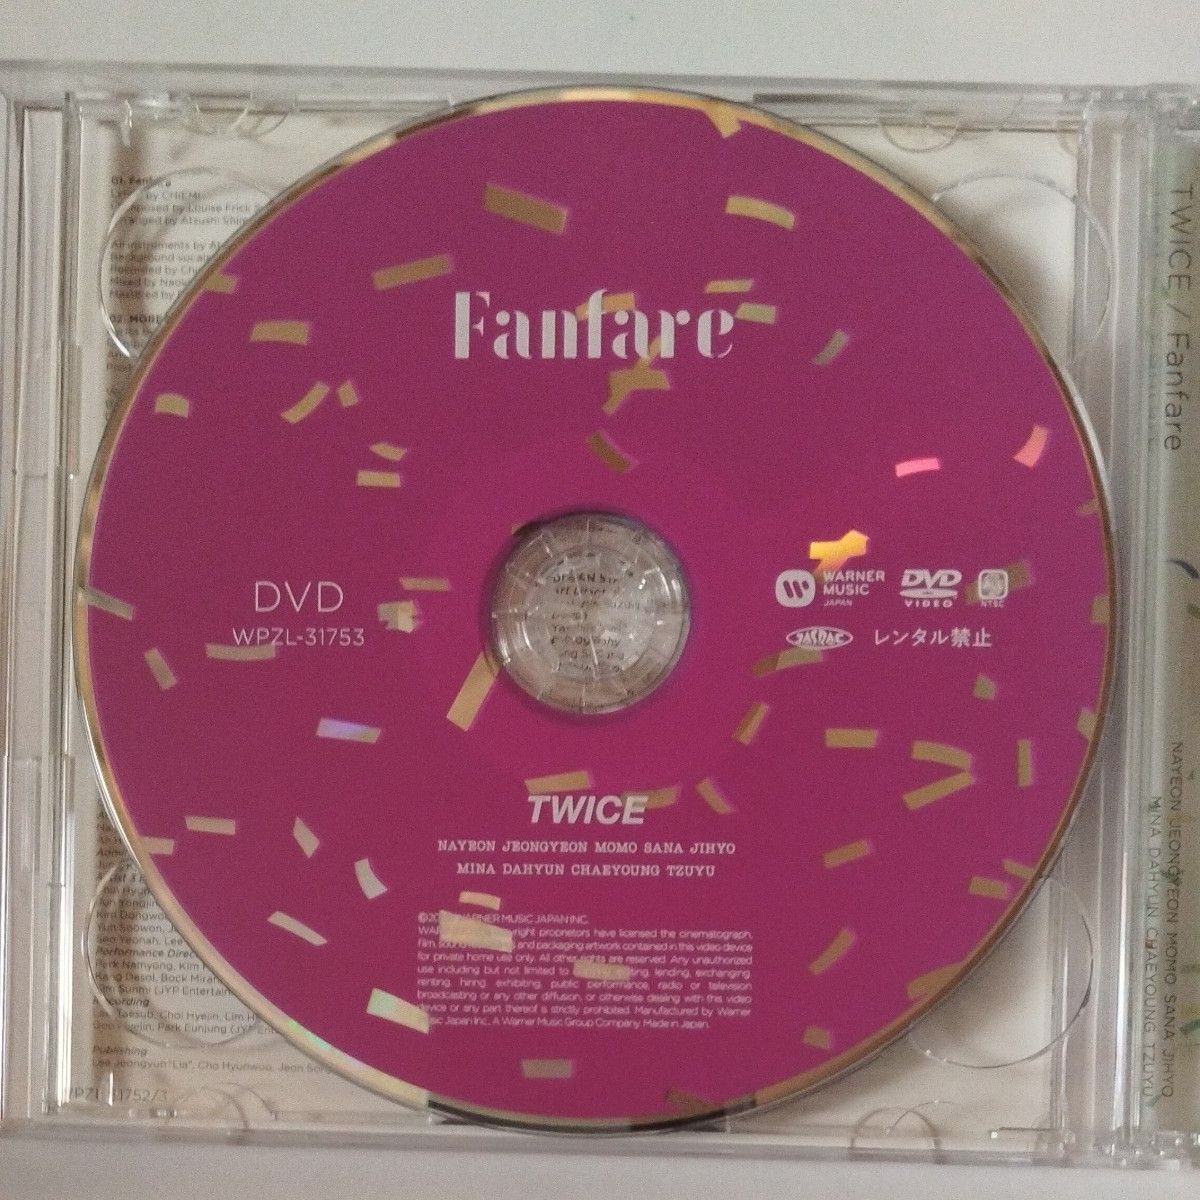 初回限定盤B トレカ封入 TWICE CD+DVD/Fanfare 20/7/8発売 オリコン加盟店